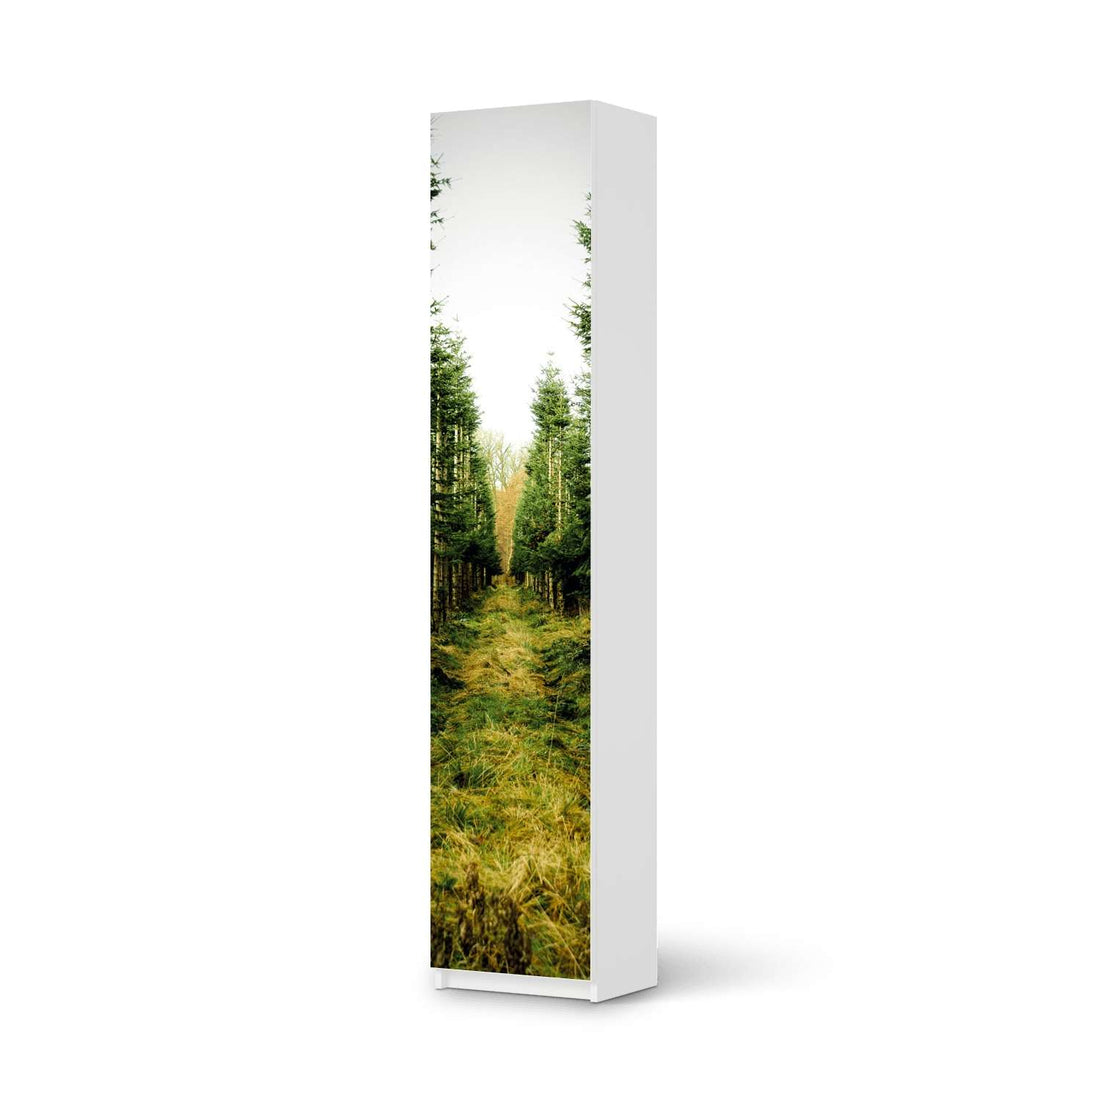 Klebefolie Green Alley - IKEA Pax Schrank 236 cm Höhe - 1 Tür - weiss